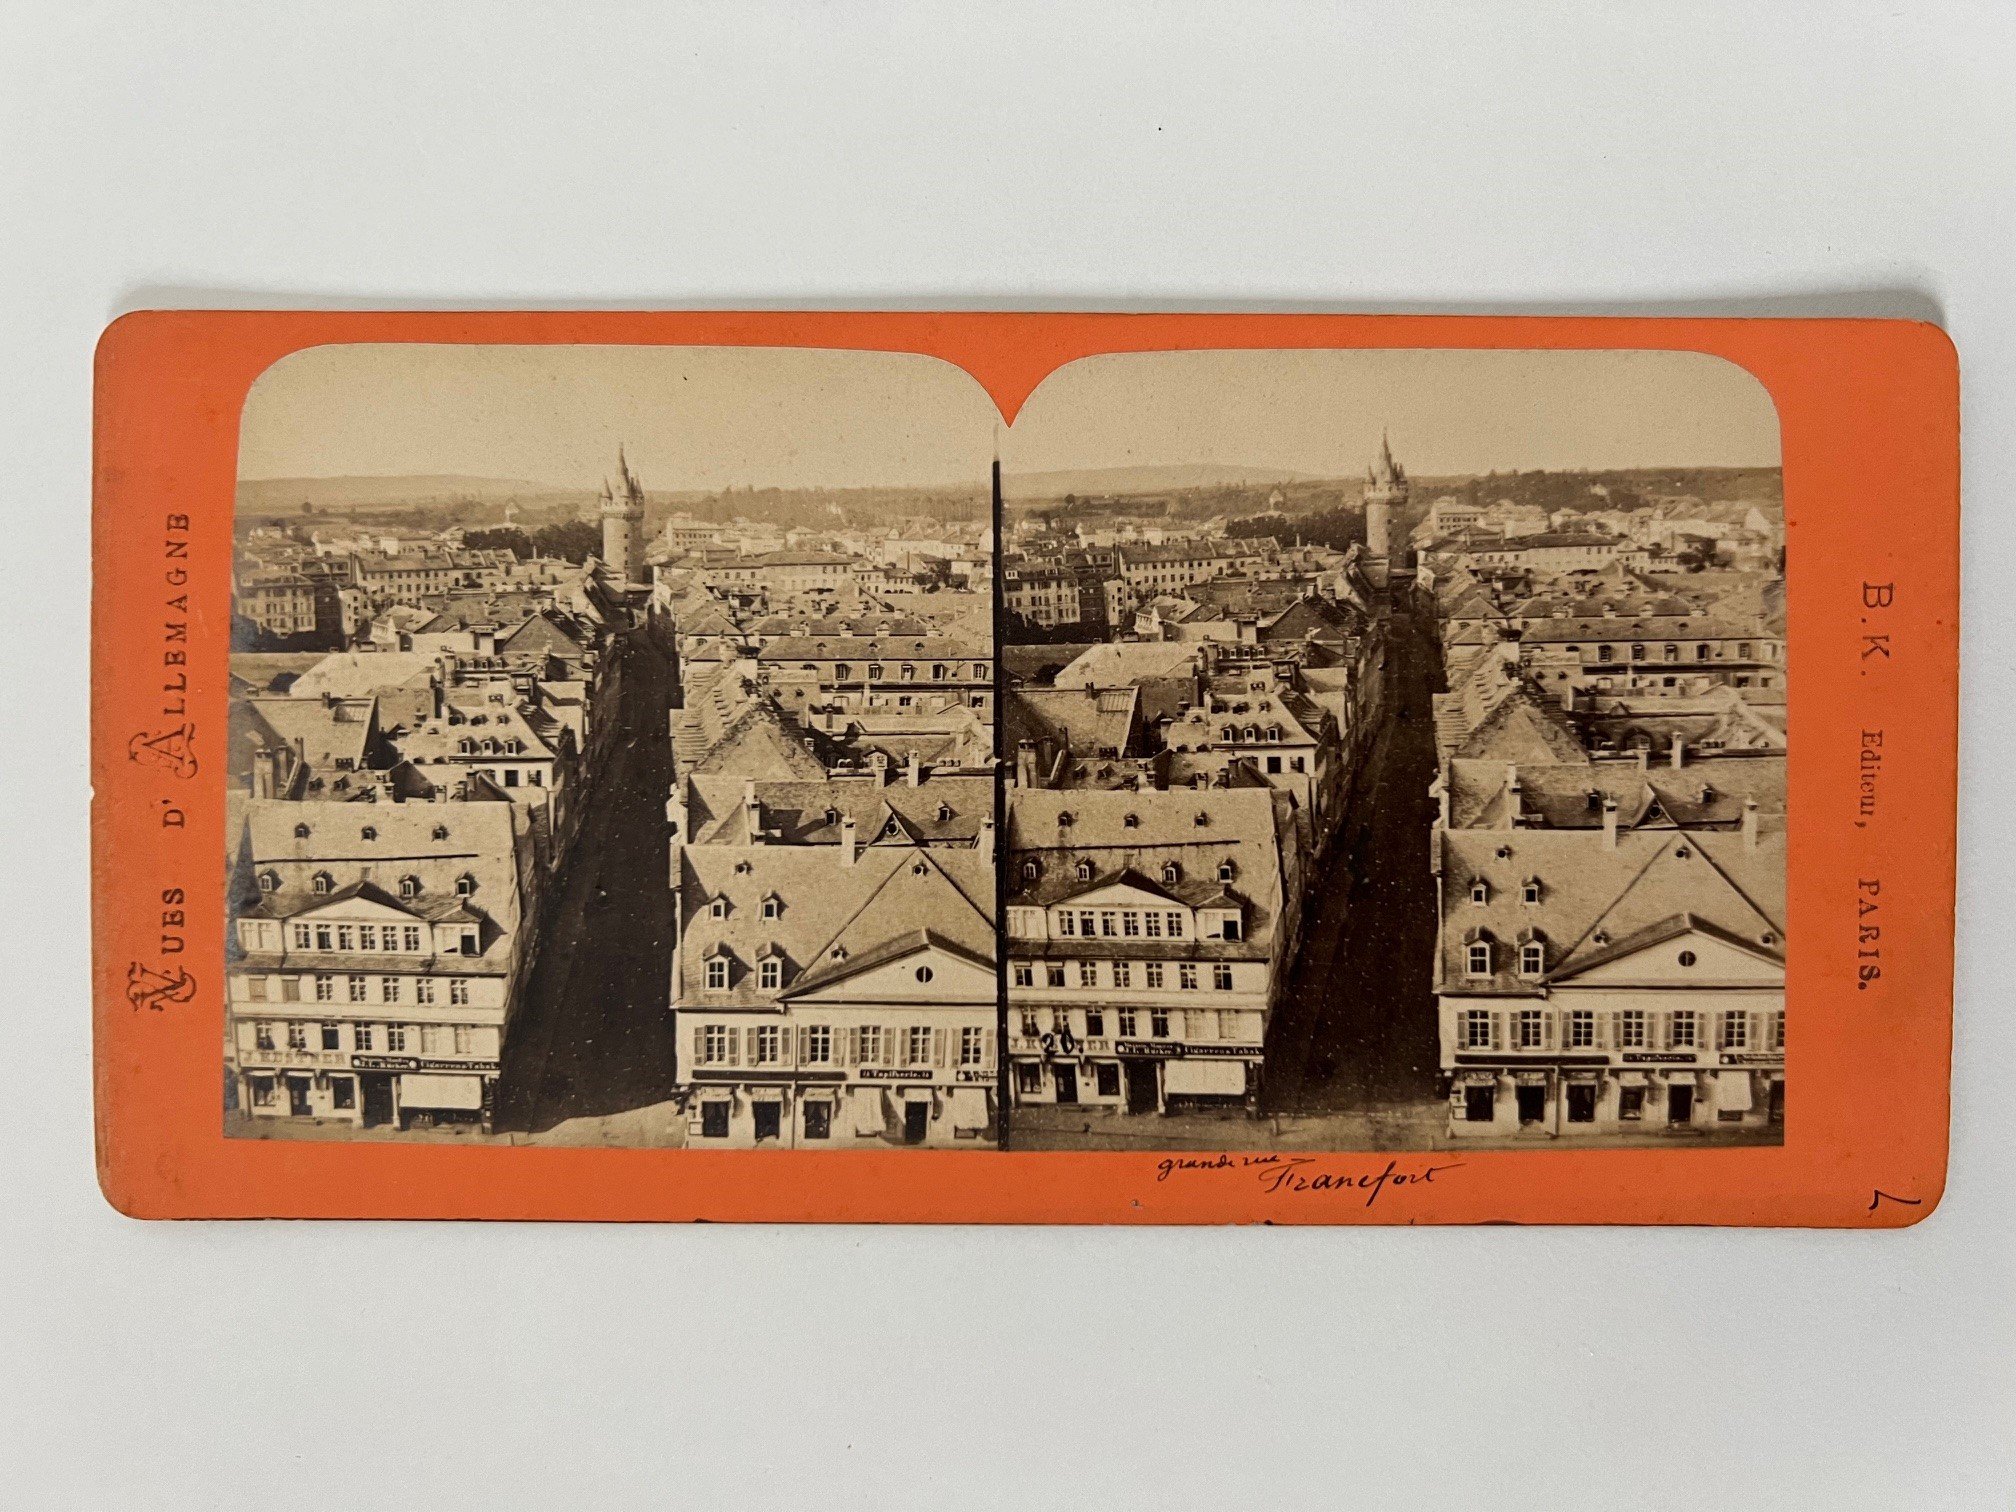 Stereobild, Unbekannter Fotograf (B. K.), Frankfurt, Große Eschenheimer Strasse, ca. 1872. (Taunus-Rhein-Main - Regionalgeschichtliche Sammlung Dr. Stefan Naas CC BY-NC-SA)